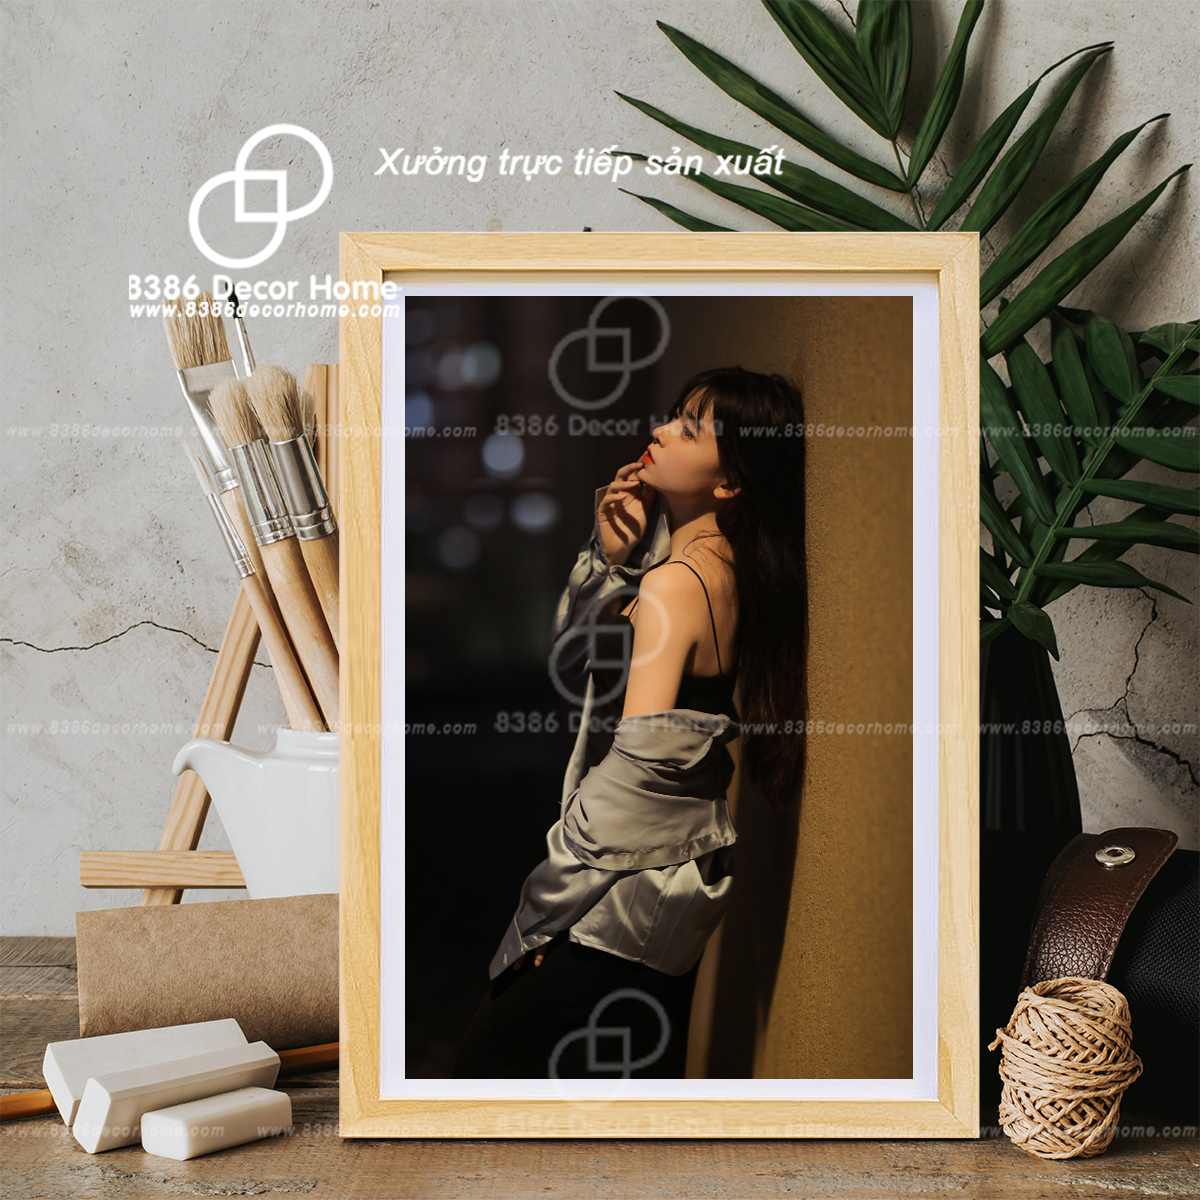 Bạn muốn trưng bày những bức ảnh của mình trong căn phòng yêu thích của mình một cách nghệ thuật? Sản phẩm khung ảnh A4 gỗ thông sẽ giúp bạn thực hiện điều đó. Chúng tôi cung cấp các sản phẩm khung ảnh A4 gỗ thông với chất lượng cao và giá cả hợp lý.